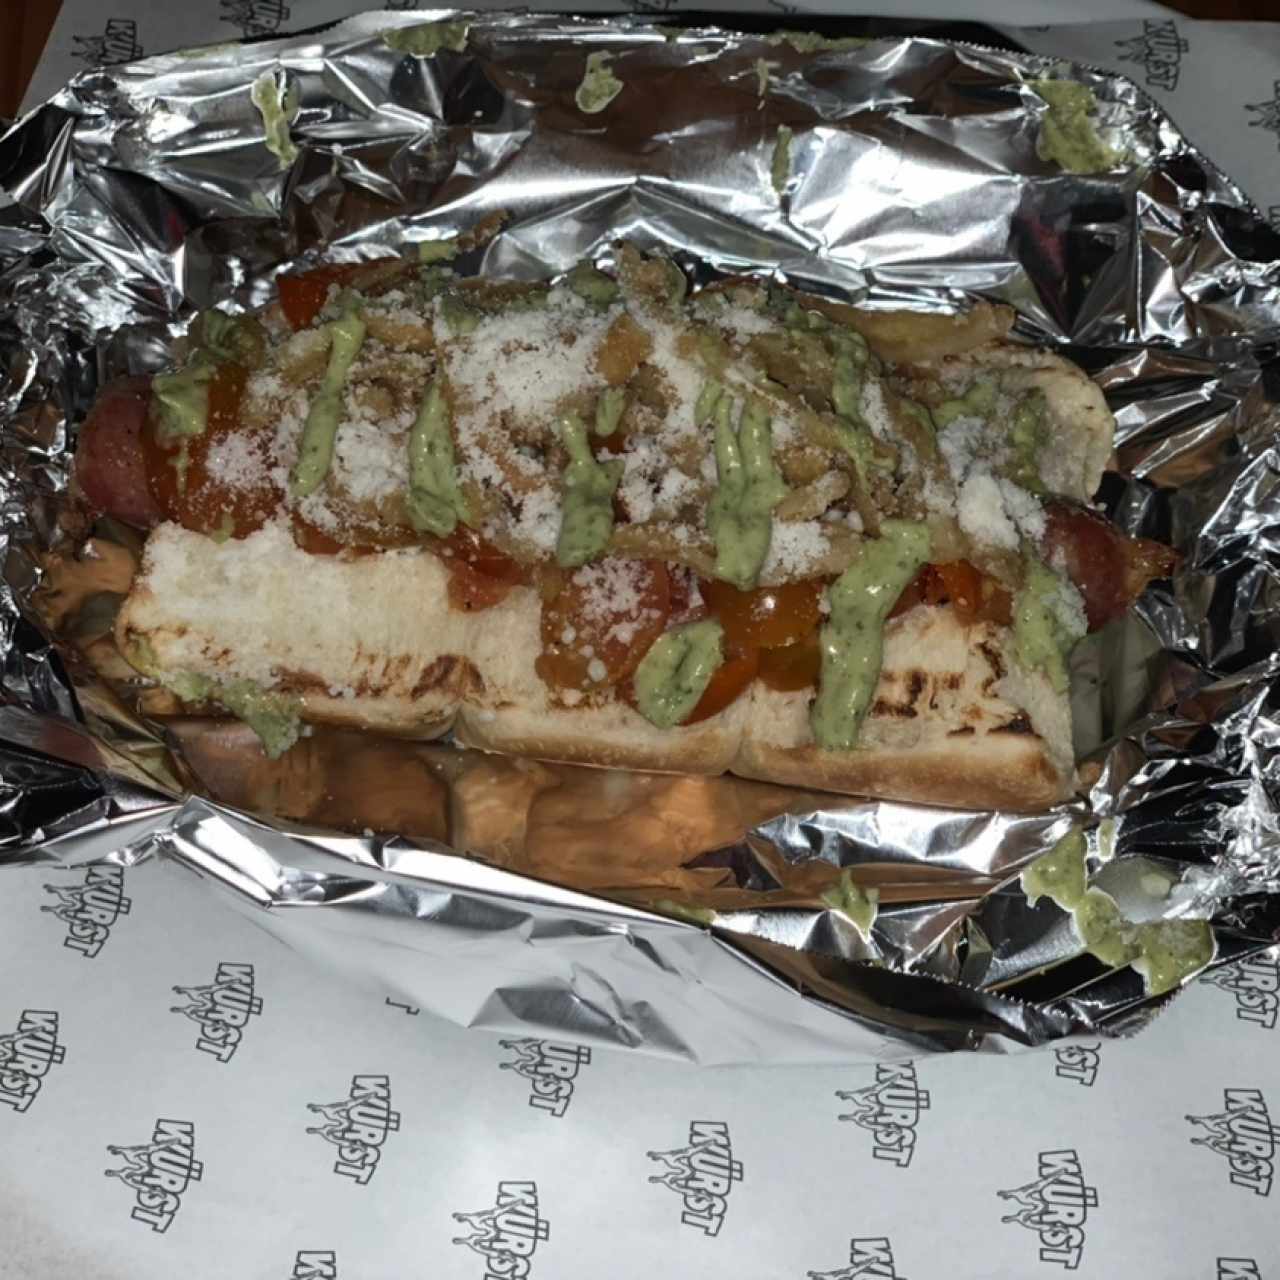 Italian hot dog